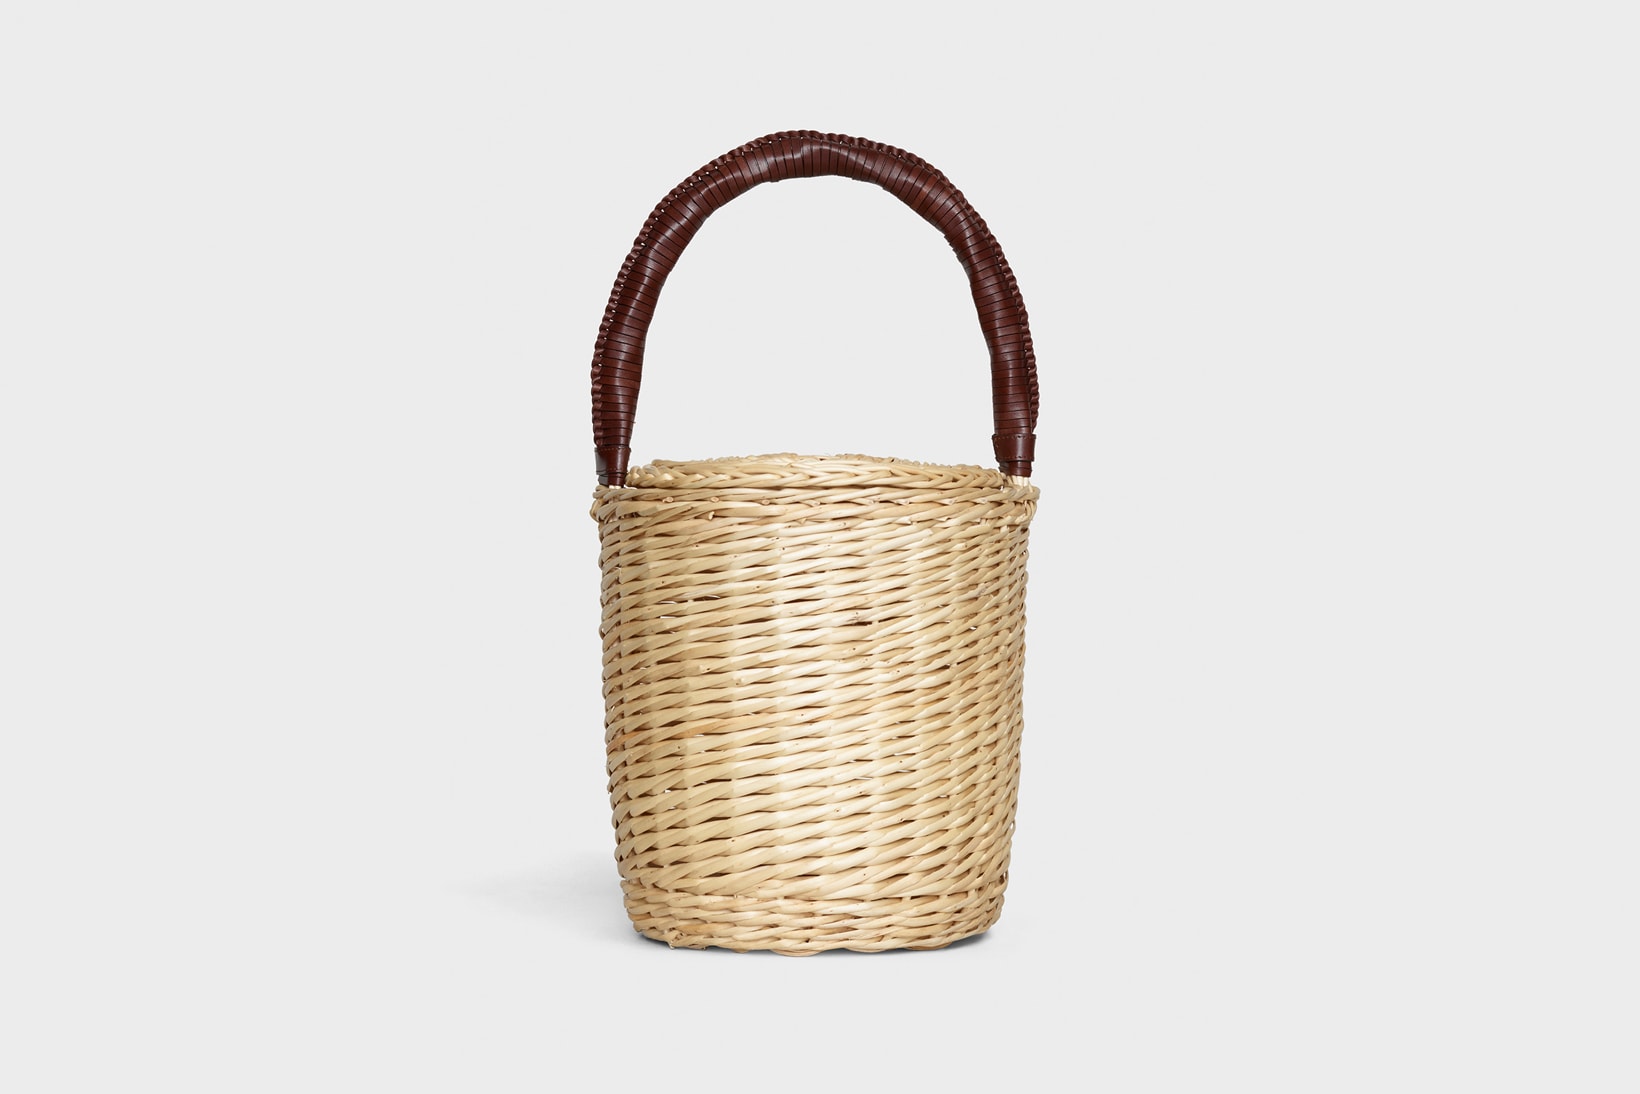 Celine Hedi Slimane Summer 2019 Basket Collection Bucket Bag Tan Brown